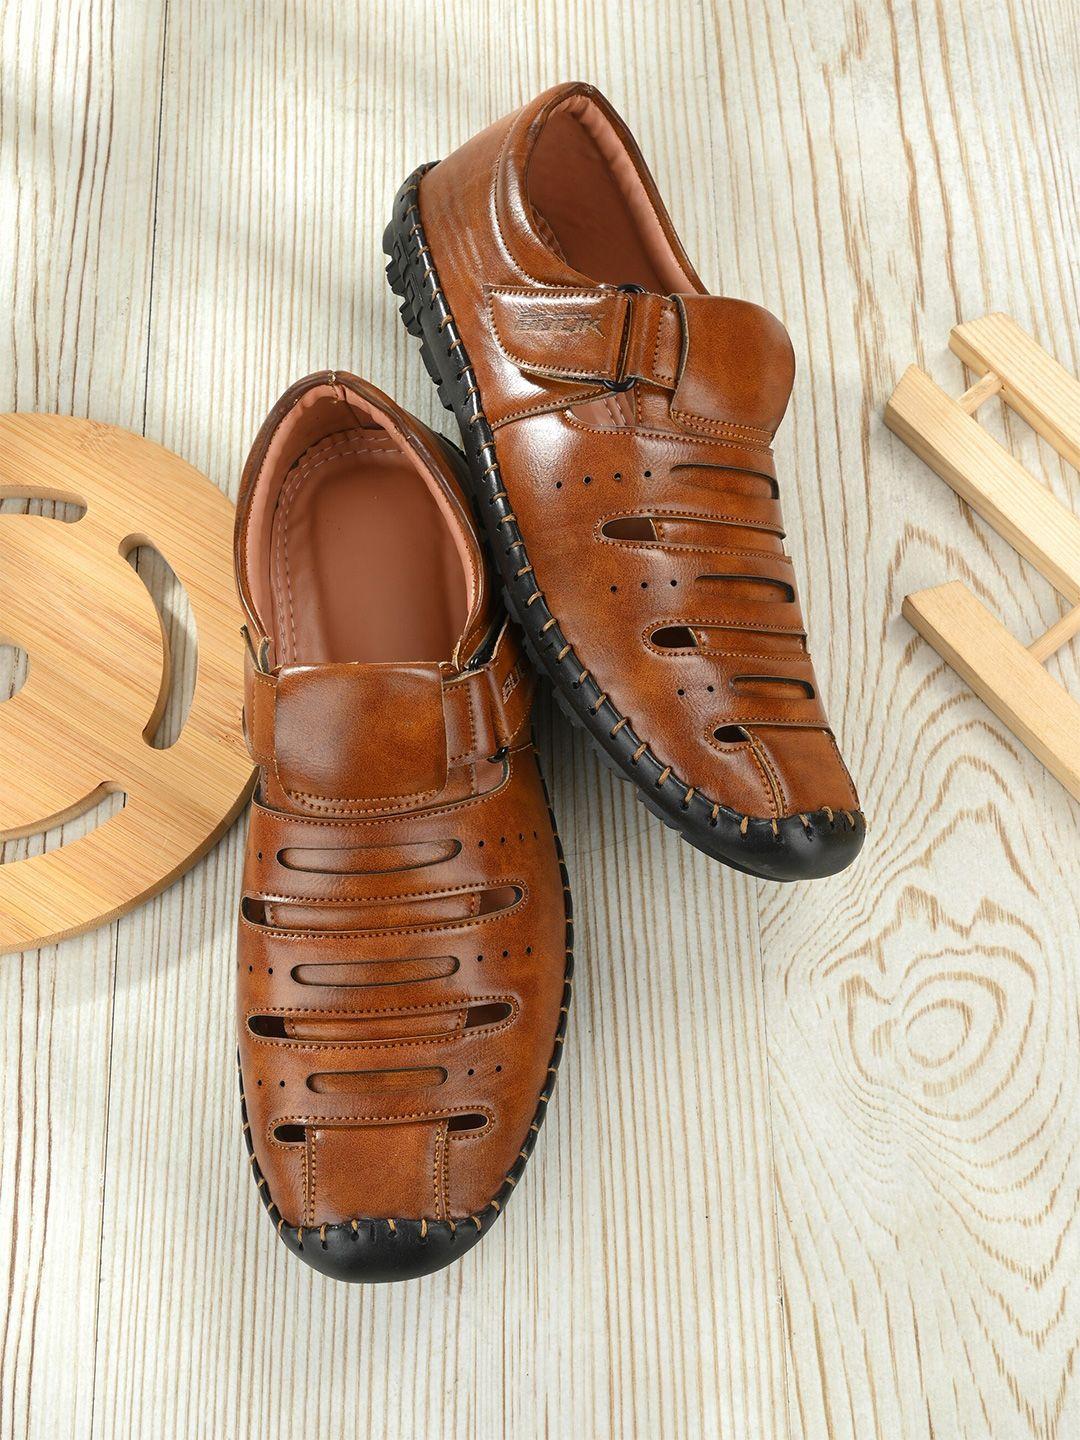 bucik men tan & black shoe-style sandals